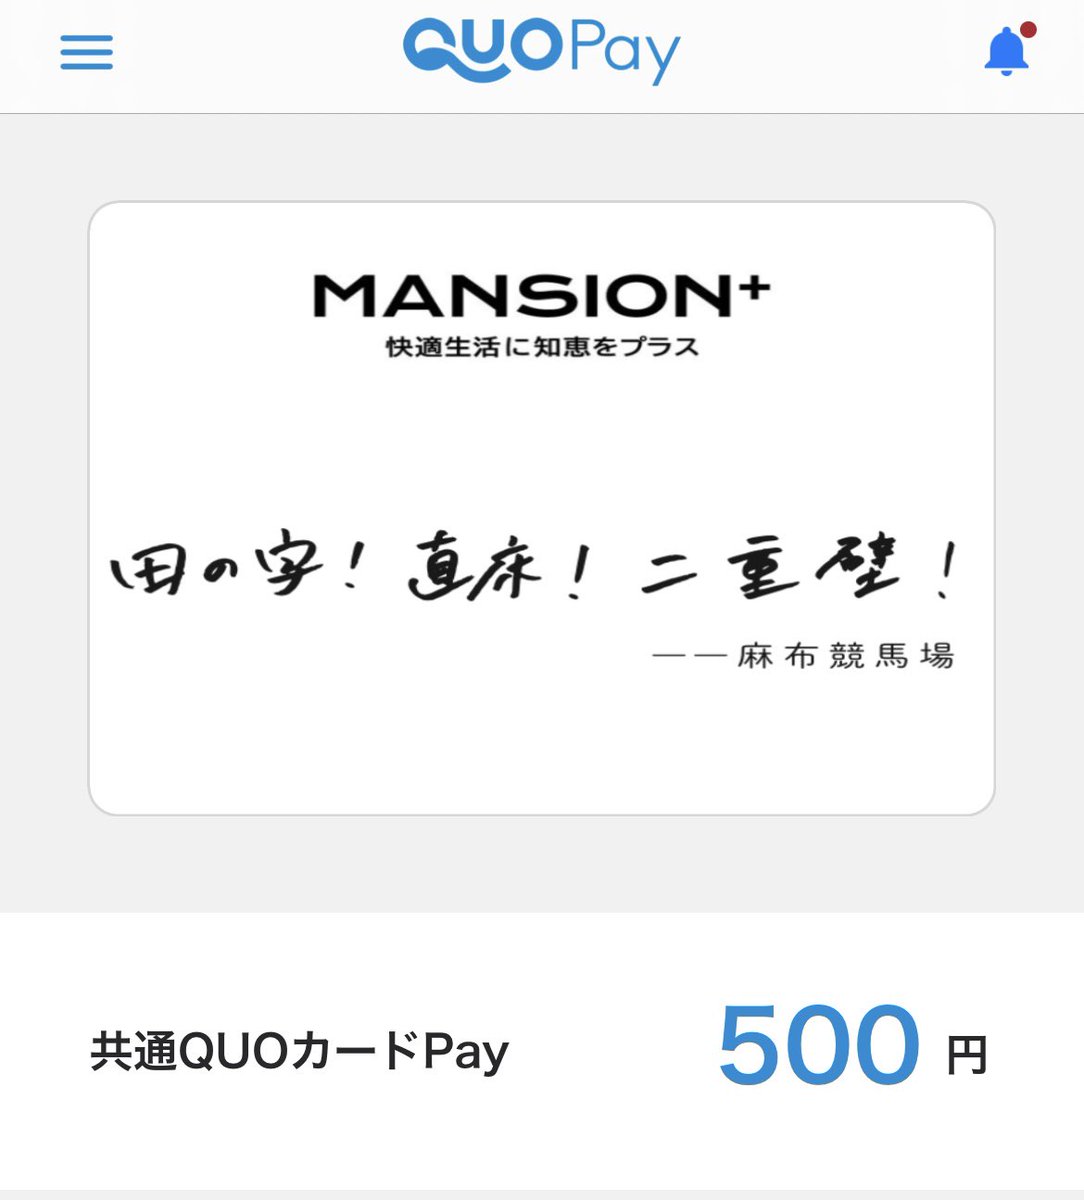 【公式】マンションプラス編集
@mansion_plus 様の
#麻布競馬場コラボキャンペーン　に当選し、
QUOカード500円いただきました(*^◯^*)

ありがとうございます♡

#さつかん当選報告